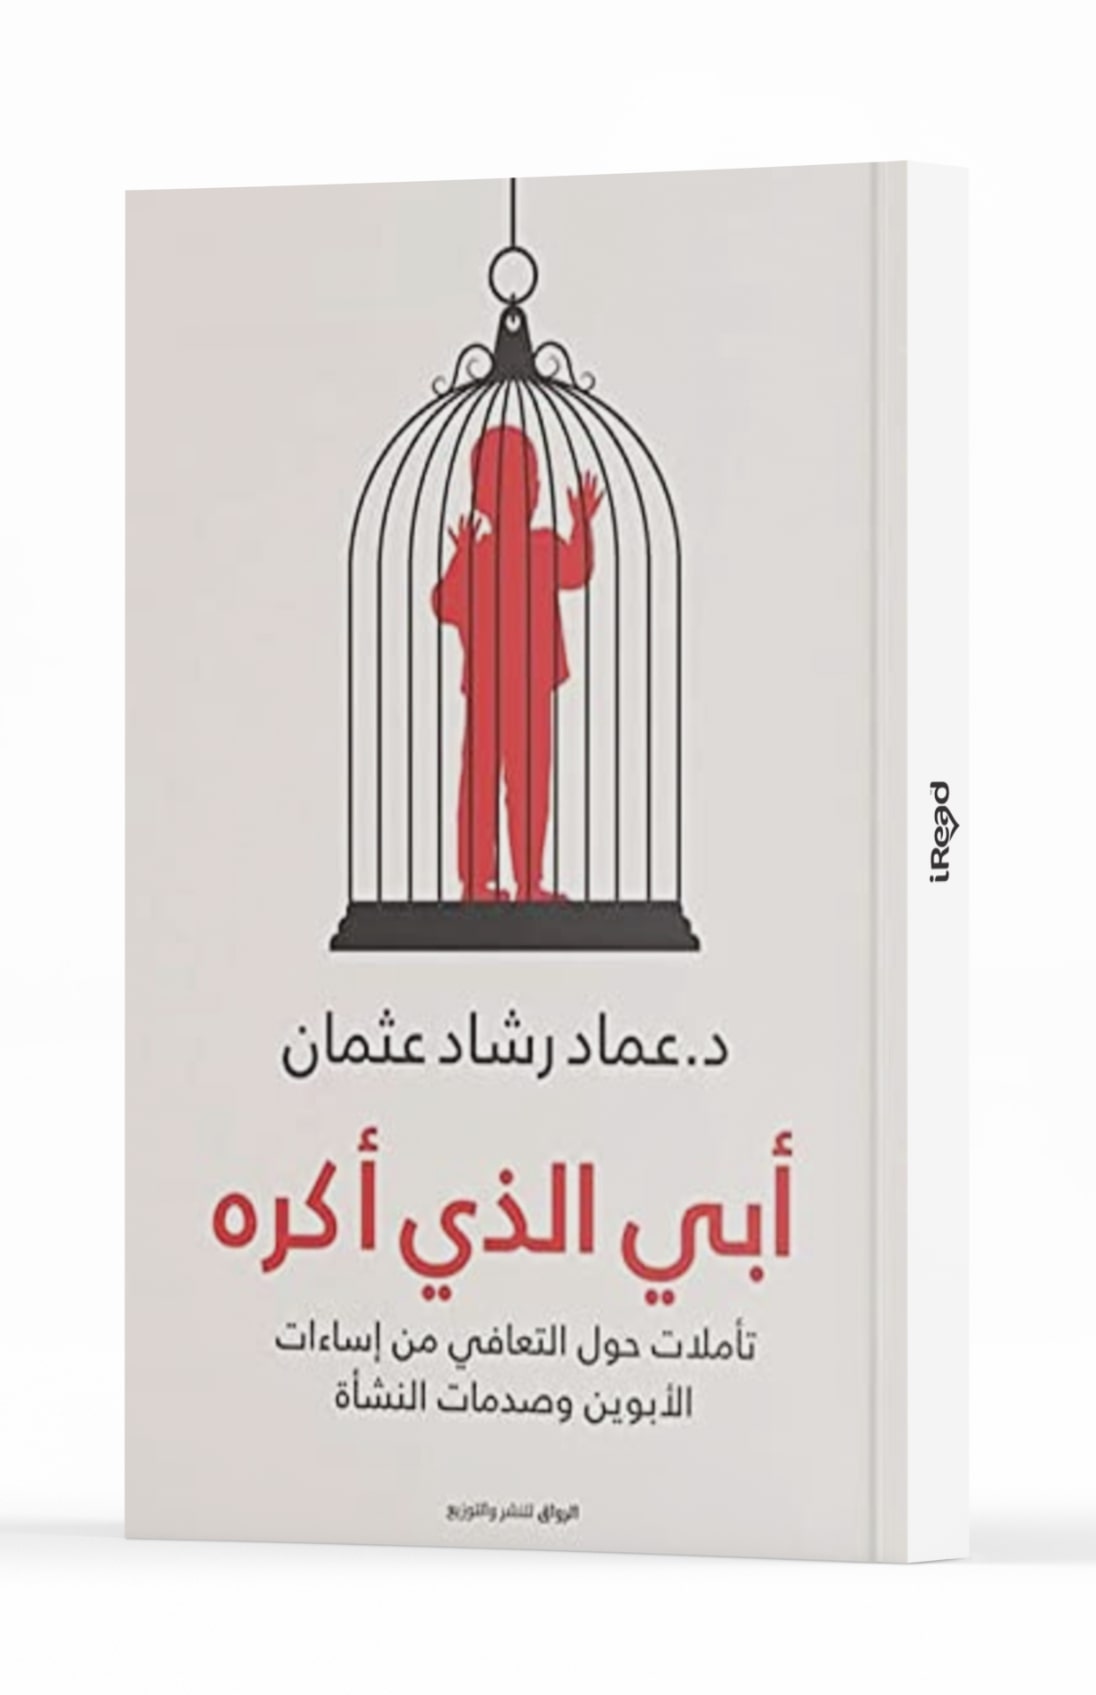 تحميل كتاب أبي الذي أكره pdf عماد رشاد عثمان